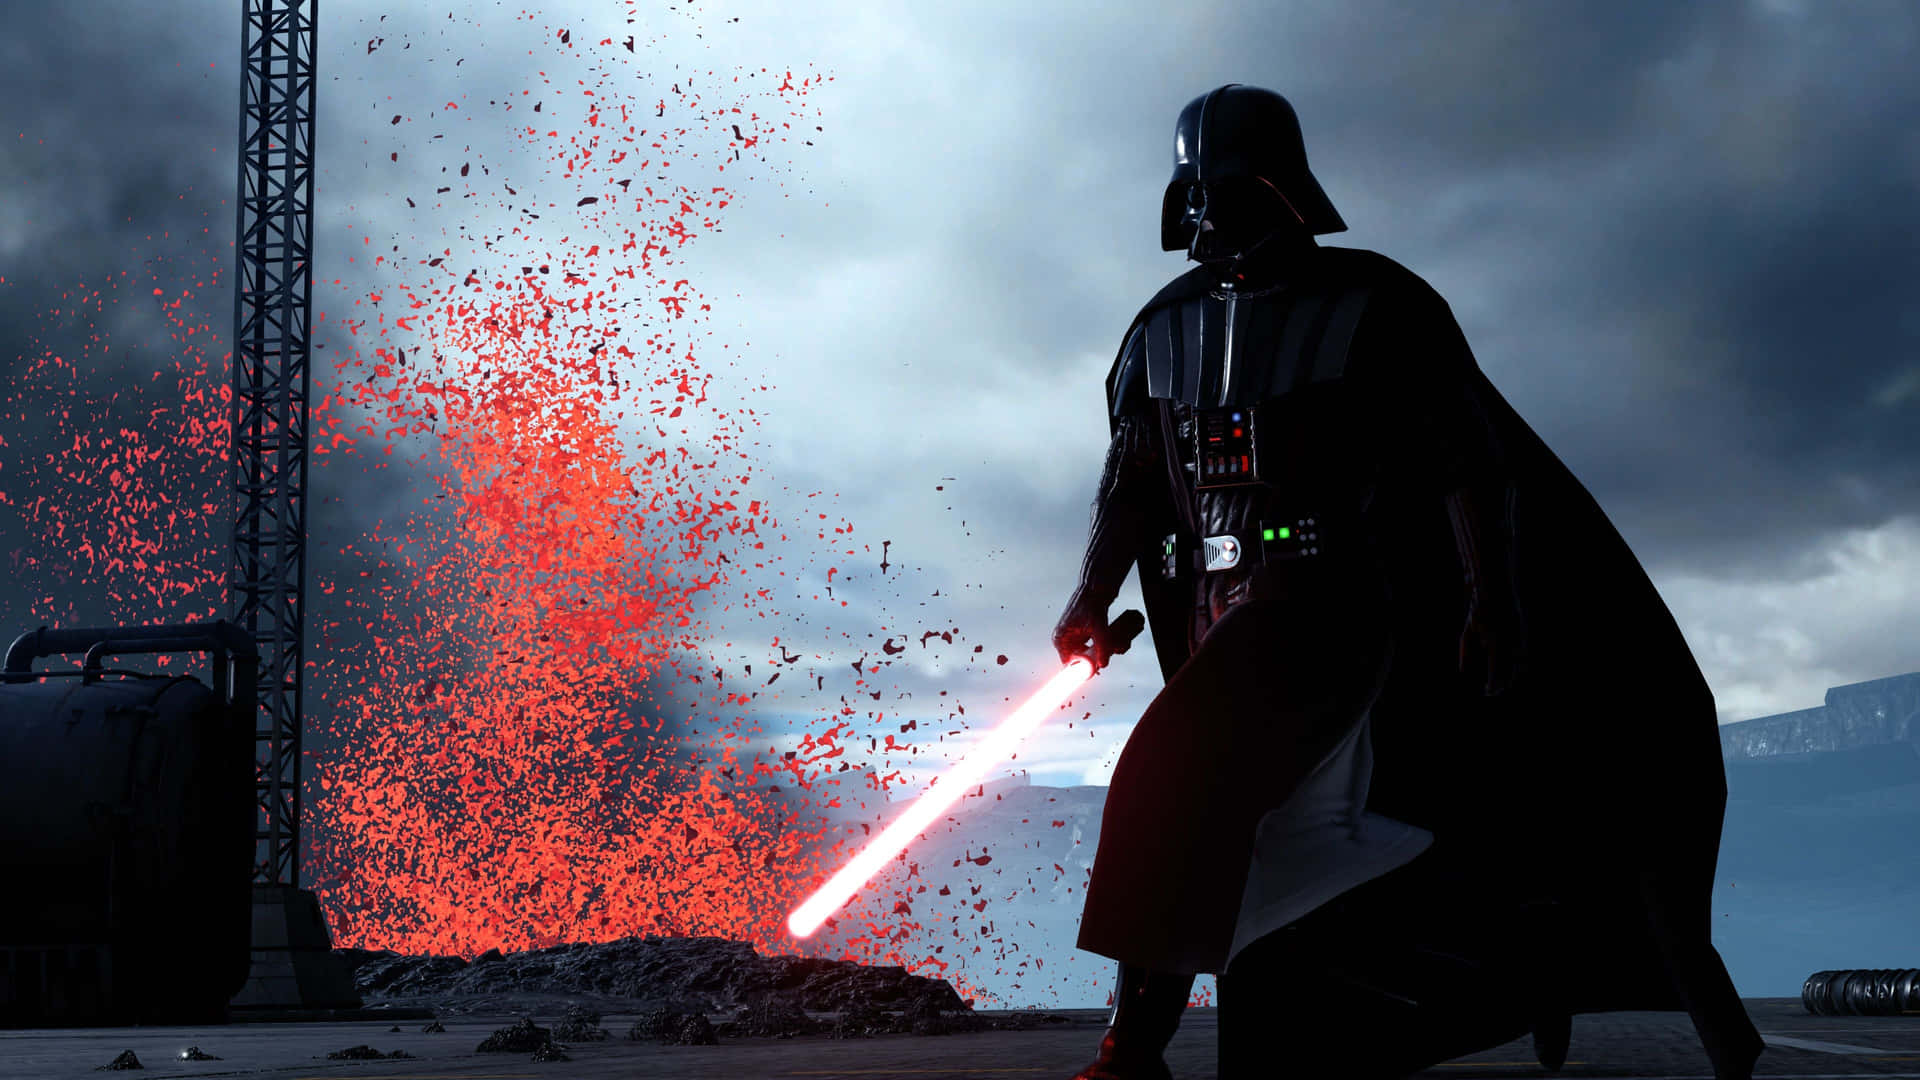 Darth Vader Red Lightsaber Action Wallpaper